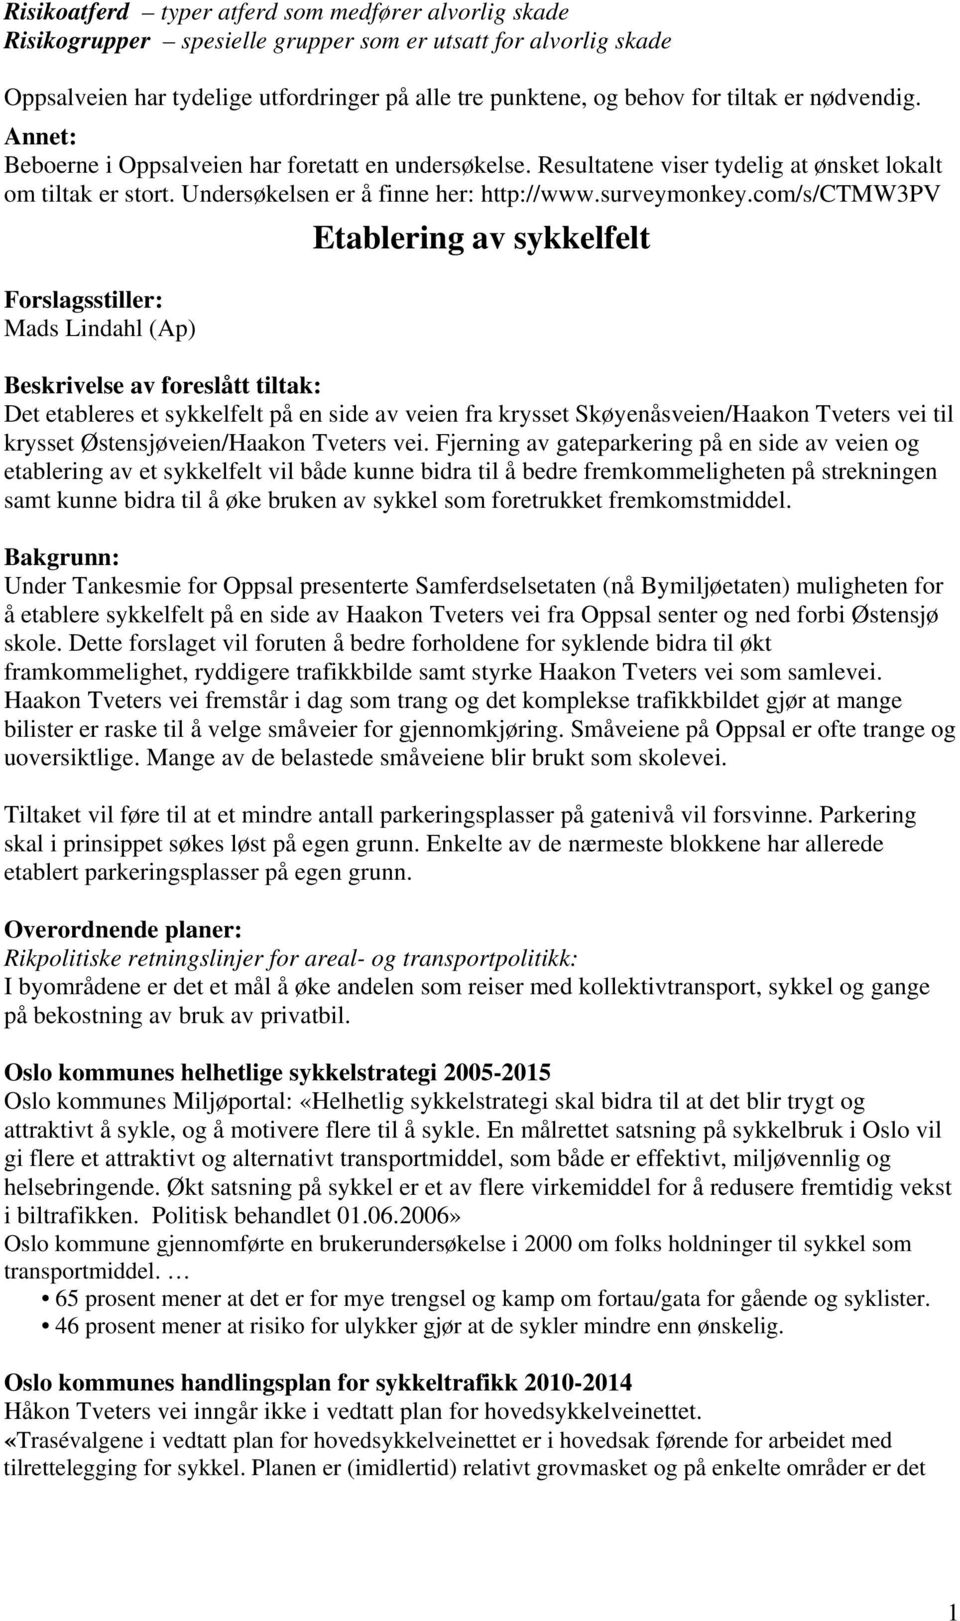 com/s/ctmw3pv Forslagsstiller: Mads Lindahl (Ap) Etablering av sykkelfelt Beskrivelse av foreslått tiltak: Det etableres et sykkelfelt på en side av veien fra krysset Skøyenåsveien/Haakon Tveters vei